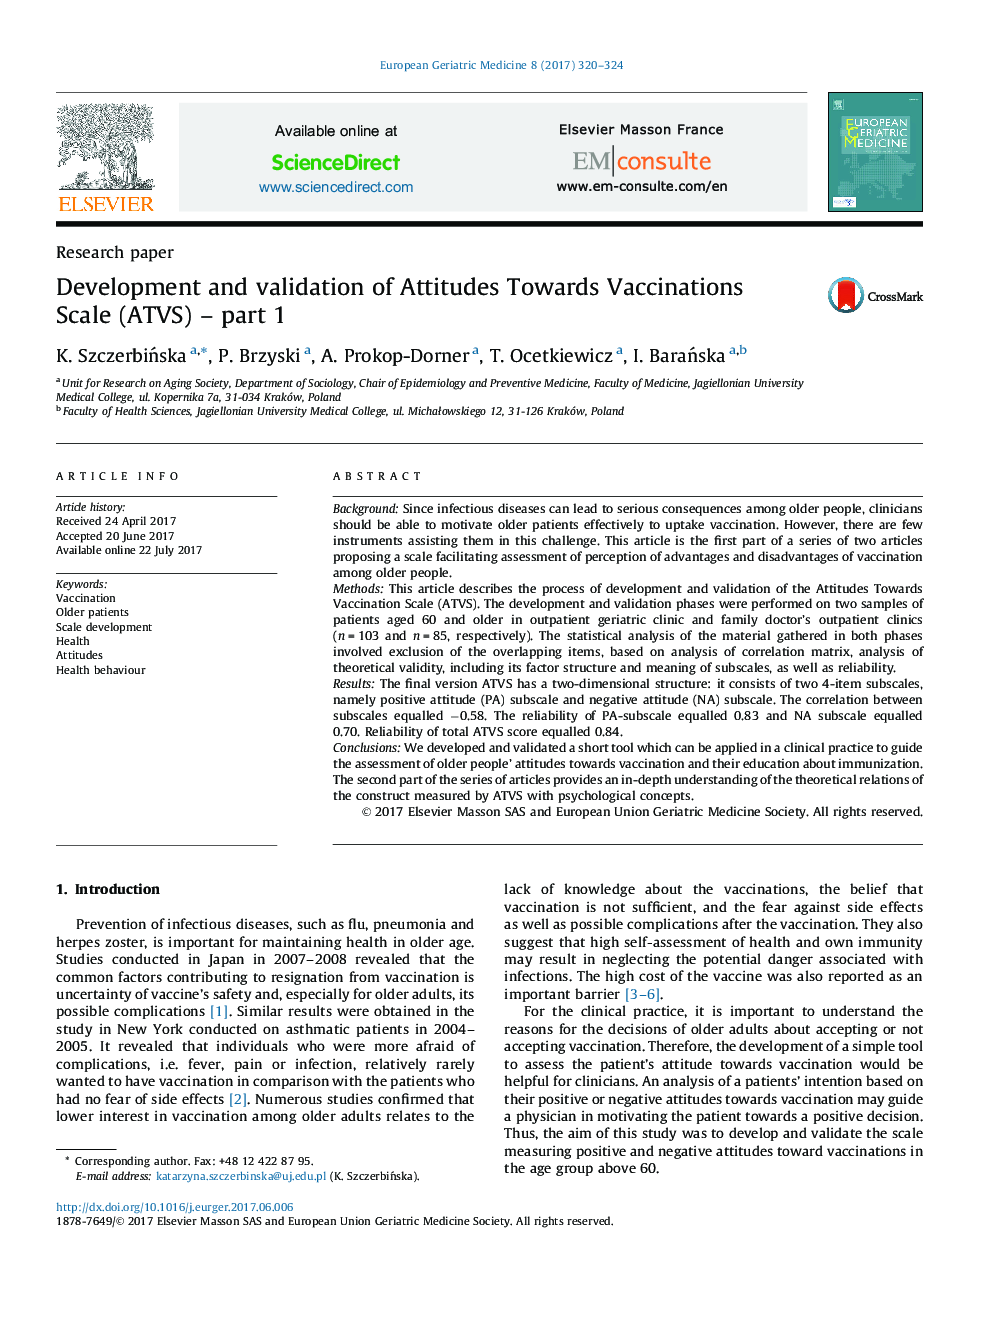 توسعه و اعتبارسنجی نگرش ها به مقیاس واکسیناسیون (ATVS) ؛ قسمت 1